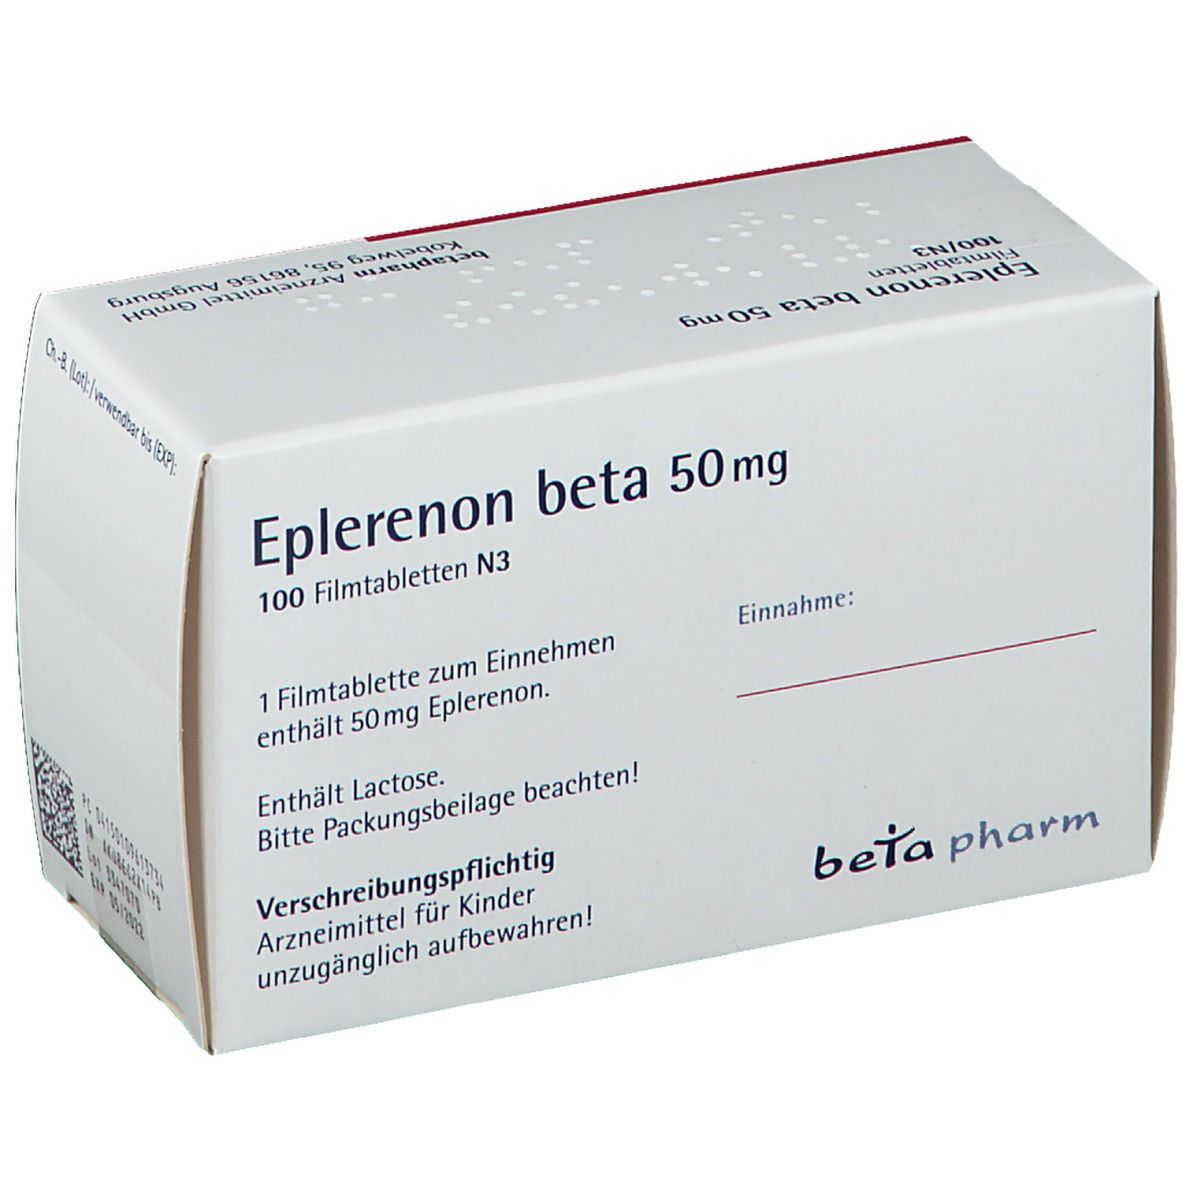 Eplerenon beta 50 mg